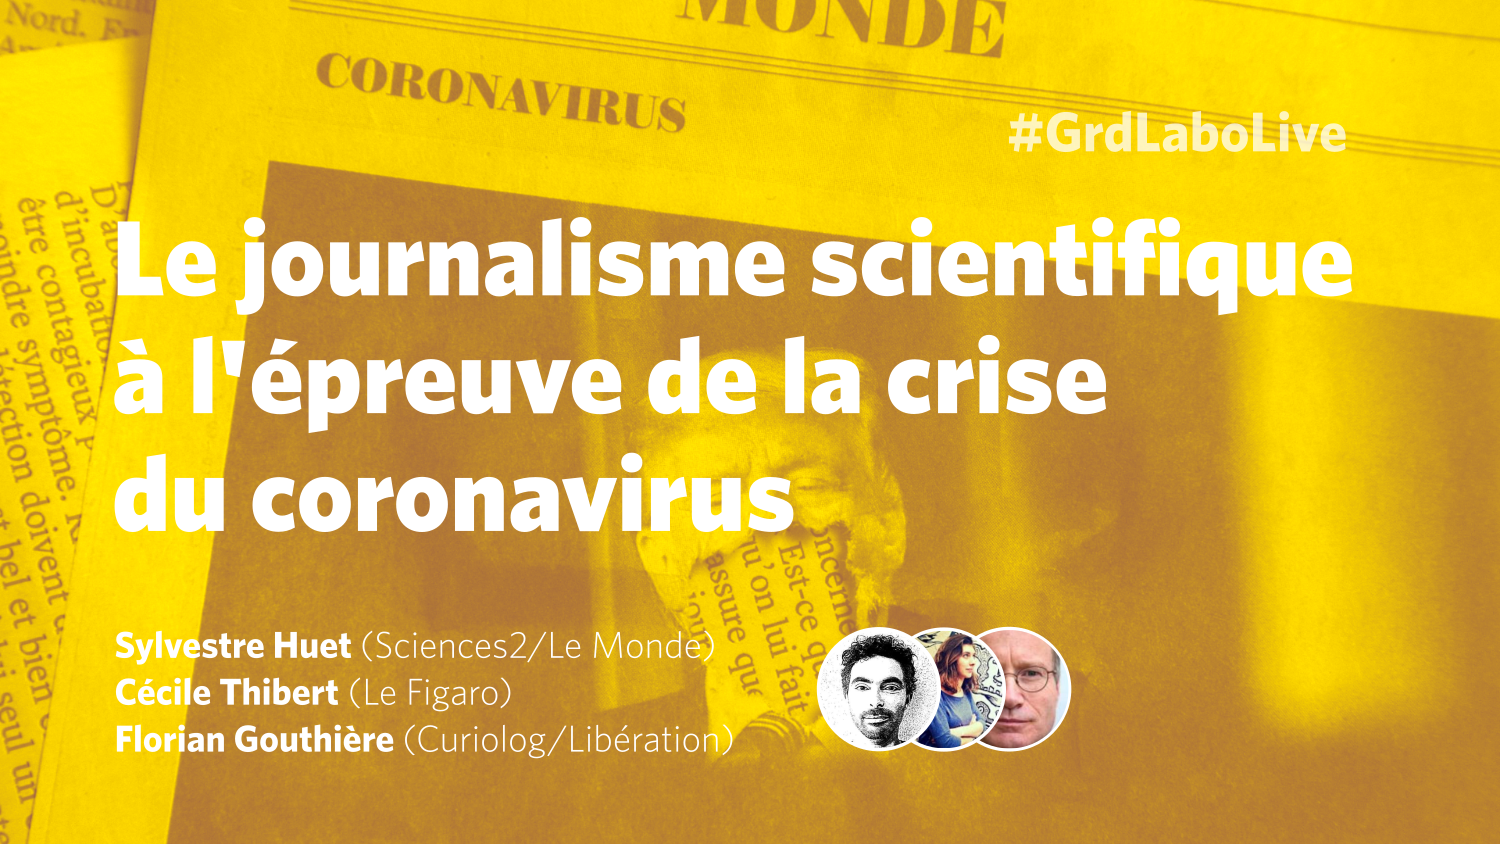 Le journalisme scientifique à l'épreuve du #coronaviruscrisis